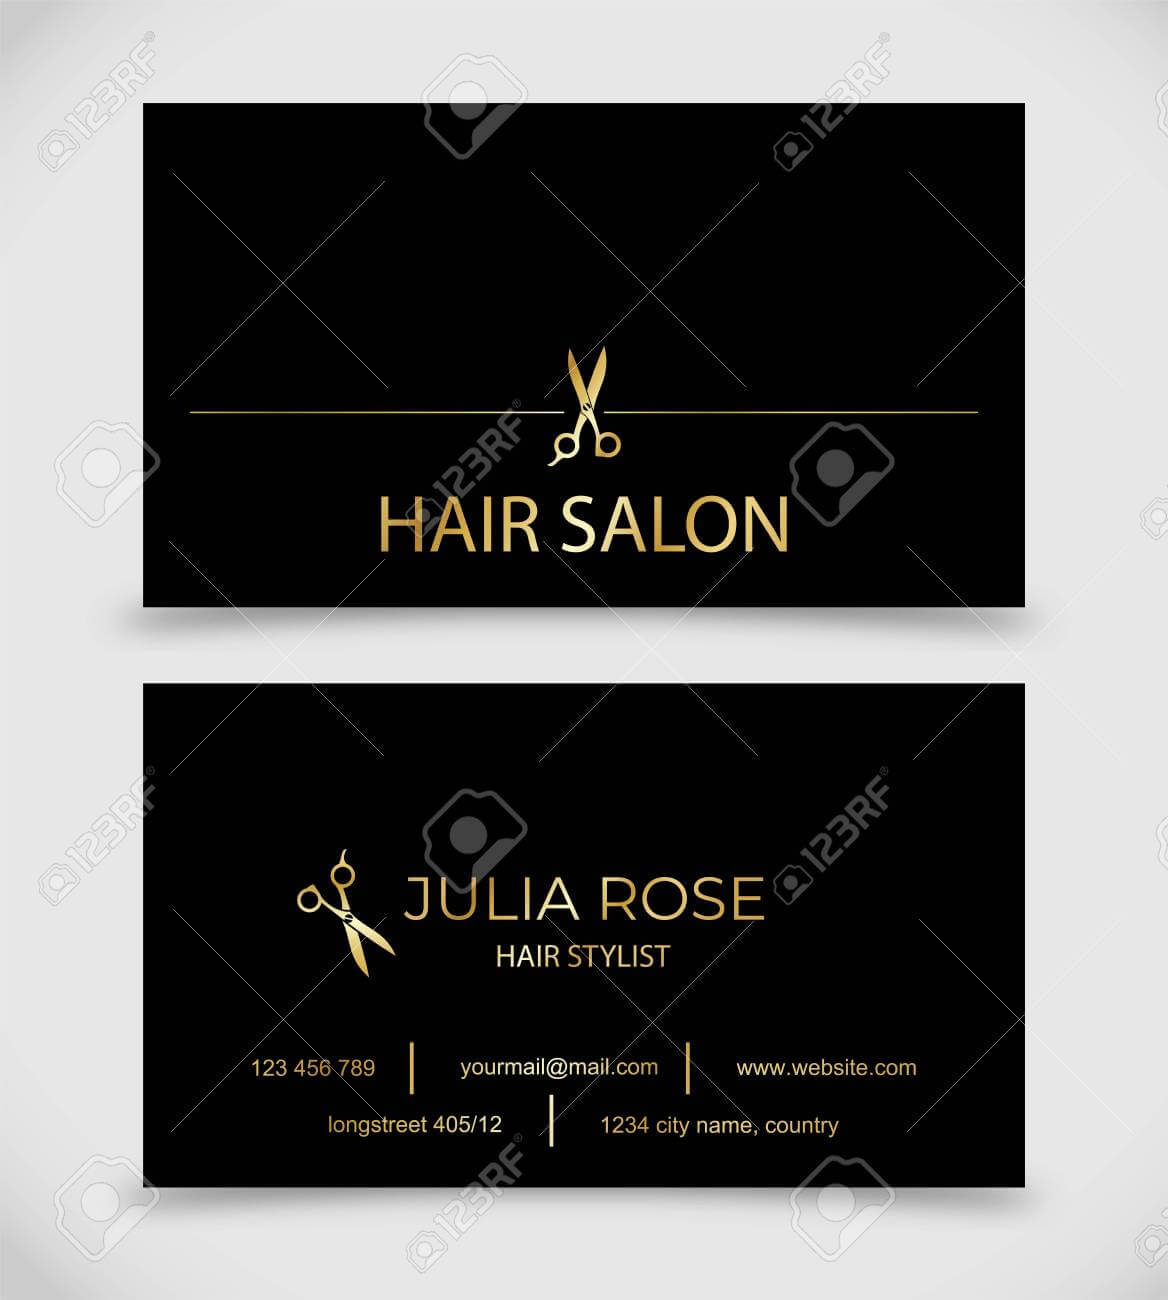 Hair Salon, Hair Stylist Business Card Vector Template Throughout Hair Salon Business Card Template